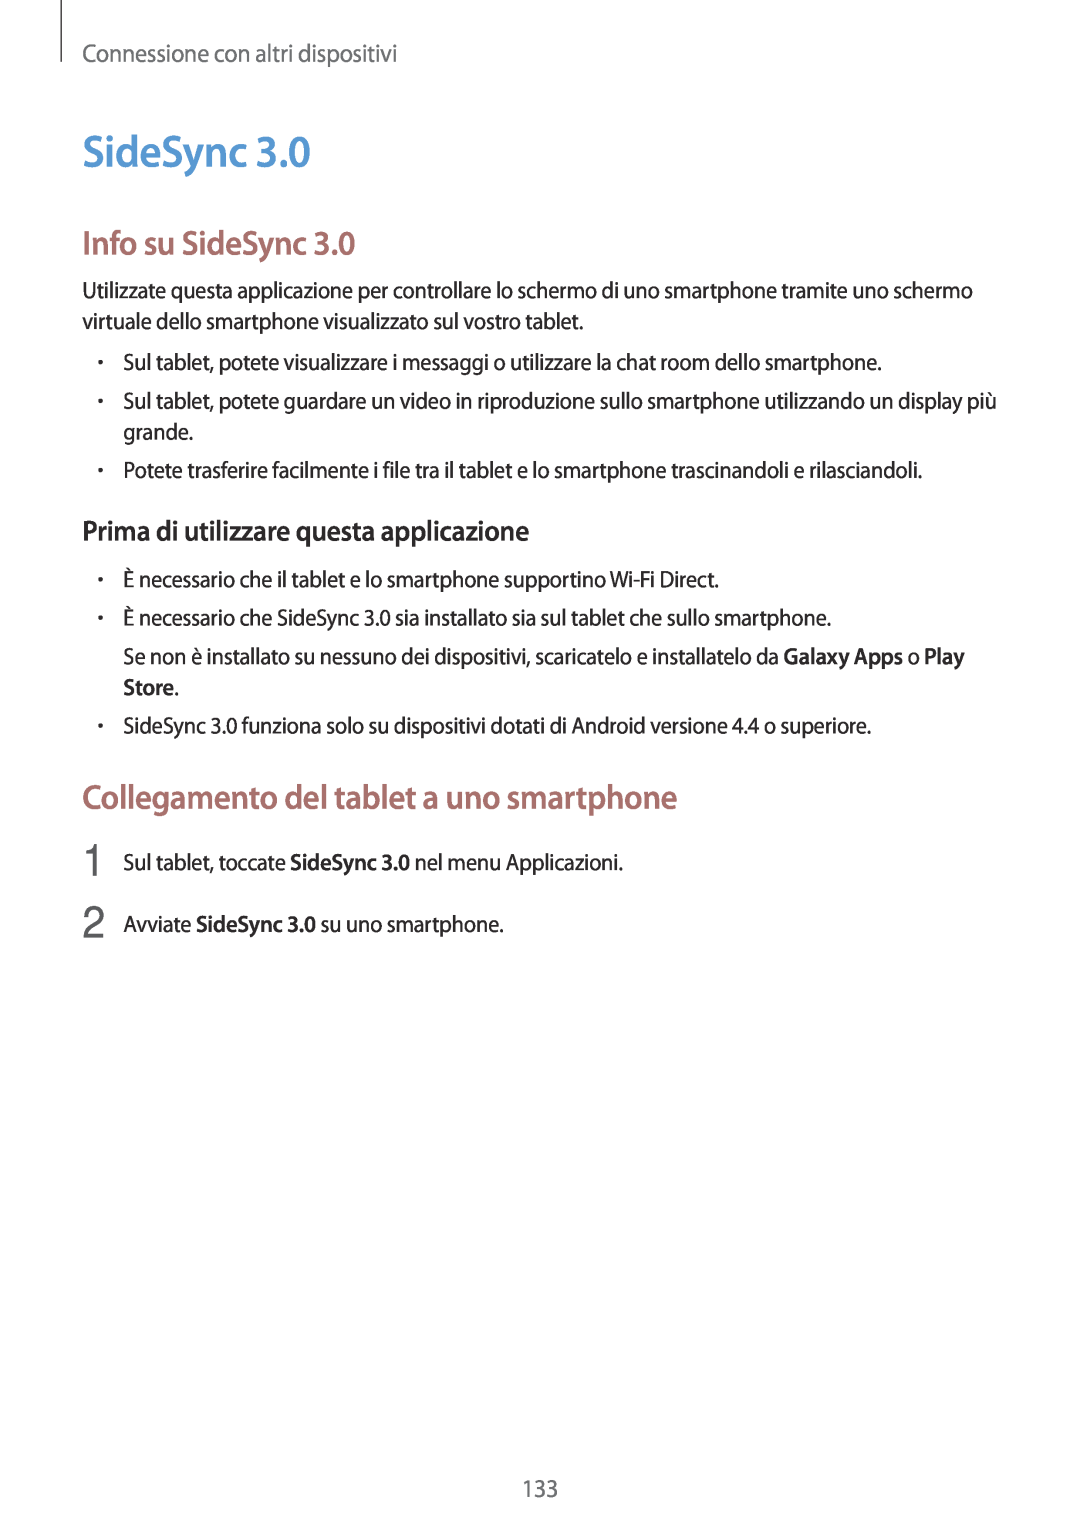 Samsung SM-T700NTSAITV Info su SideSync, Collegamento del tablet a uno smartphone, Connessione con altri dispositivi 